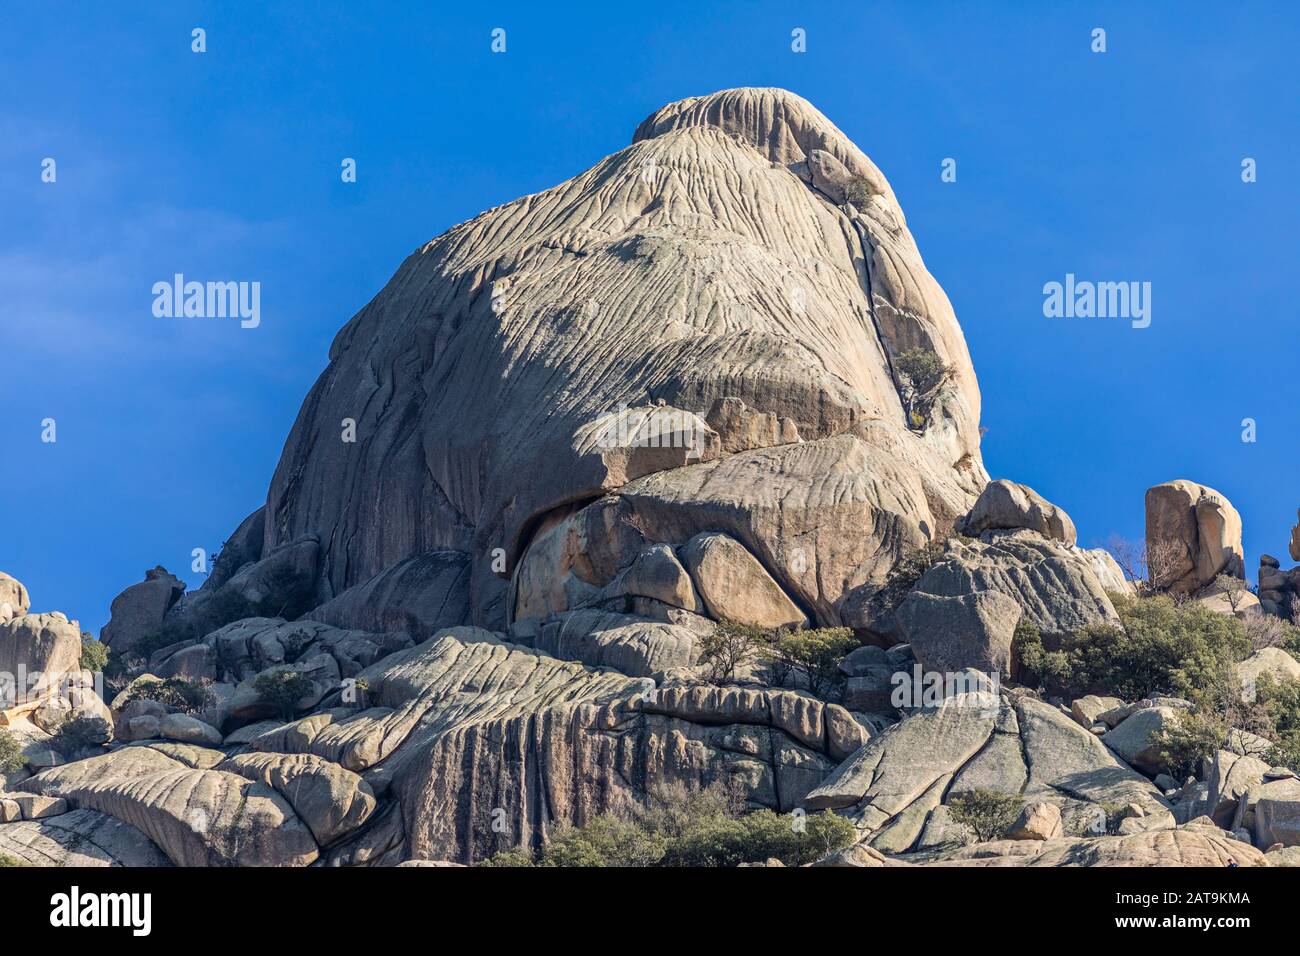 'Peña Sirio' una montagna awe con una bella formazione rocciosa all'interno della Pedriza al Parco Nazionale Guadarrama (Spagna). Un posto fantastico per arrampicarsi su roccia Foto Stock